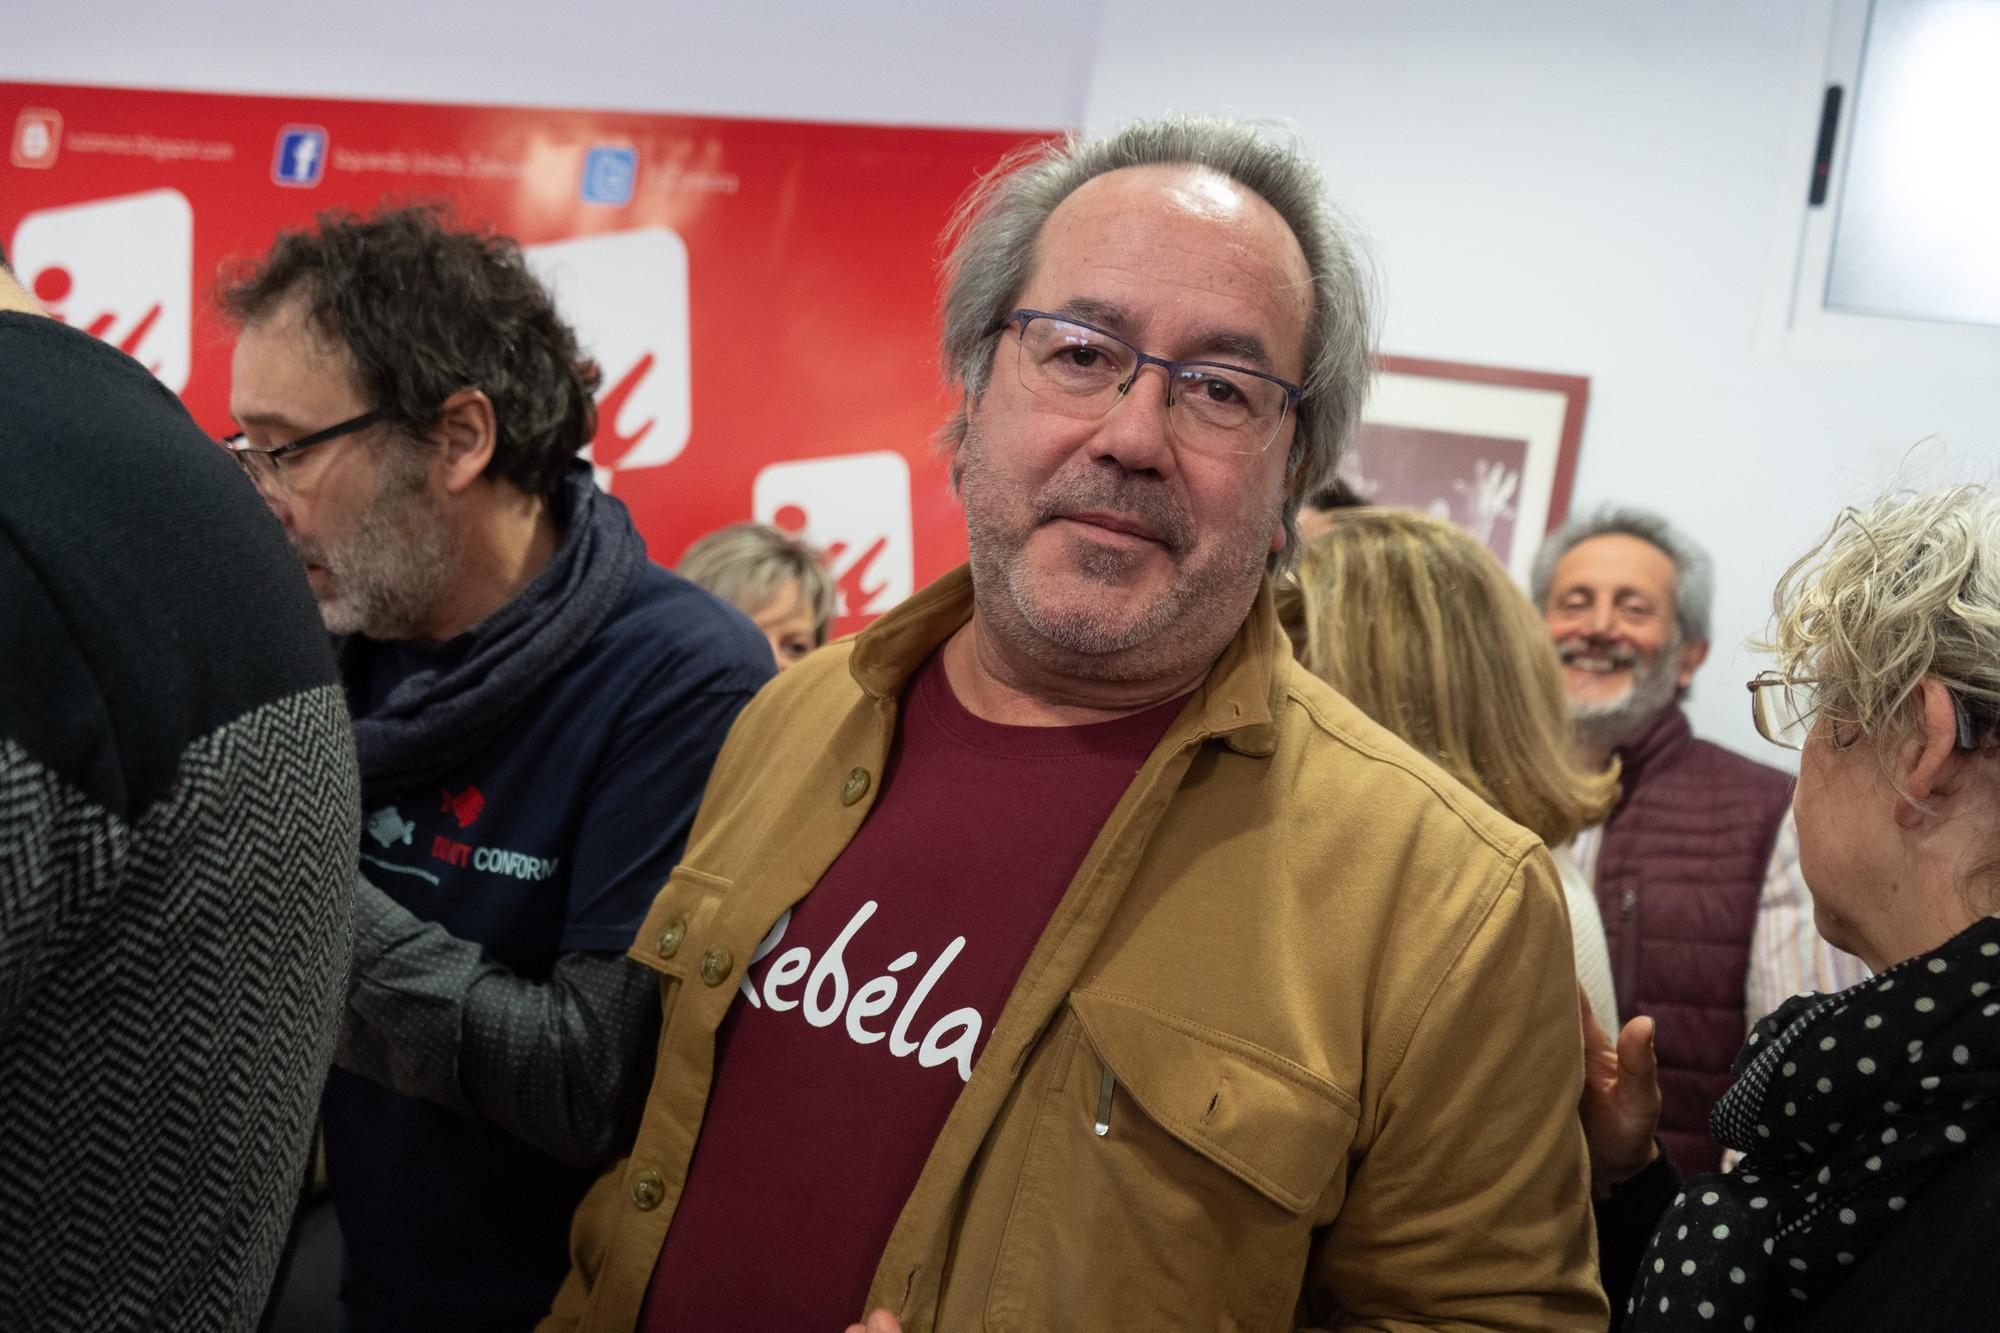 Francisco Guarido (Izquierda Unida) anuncia su candidatura a la Alcaldía de Zamora en 2023